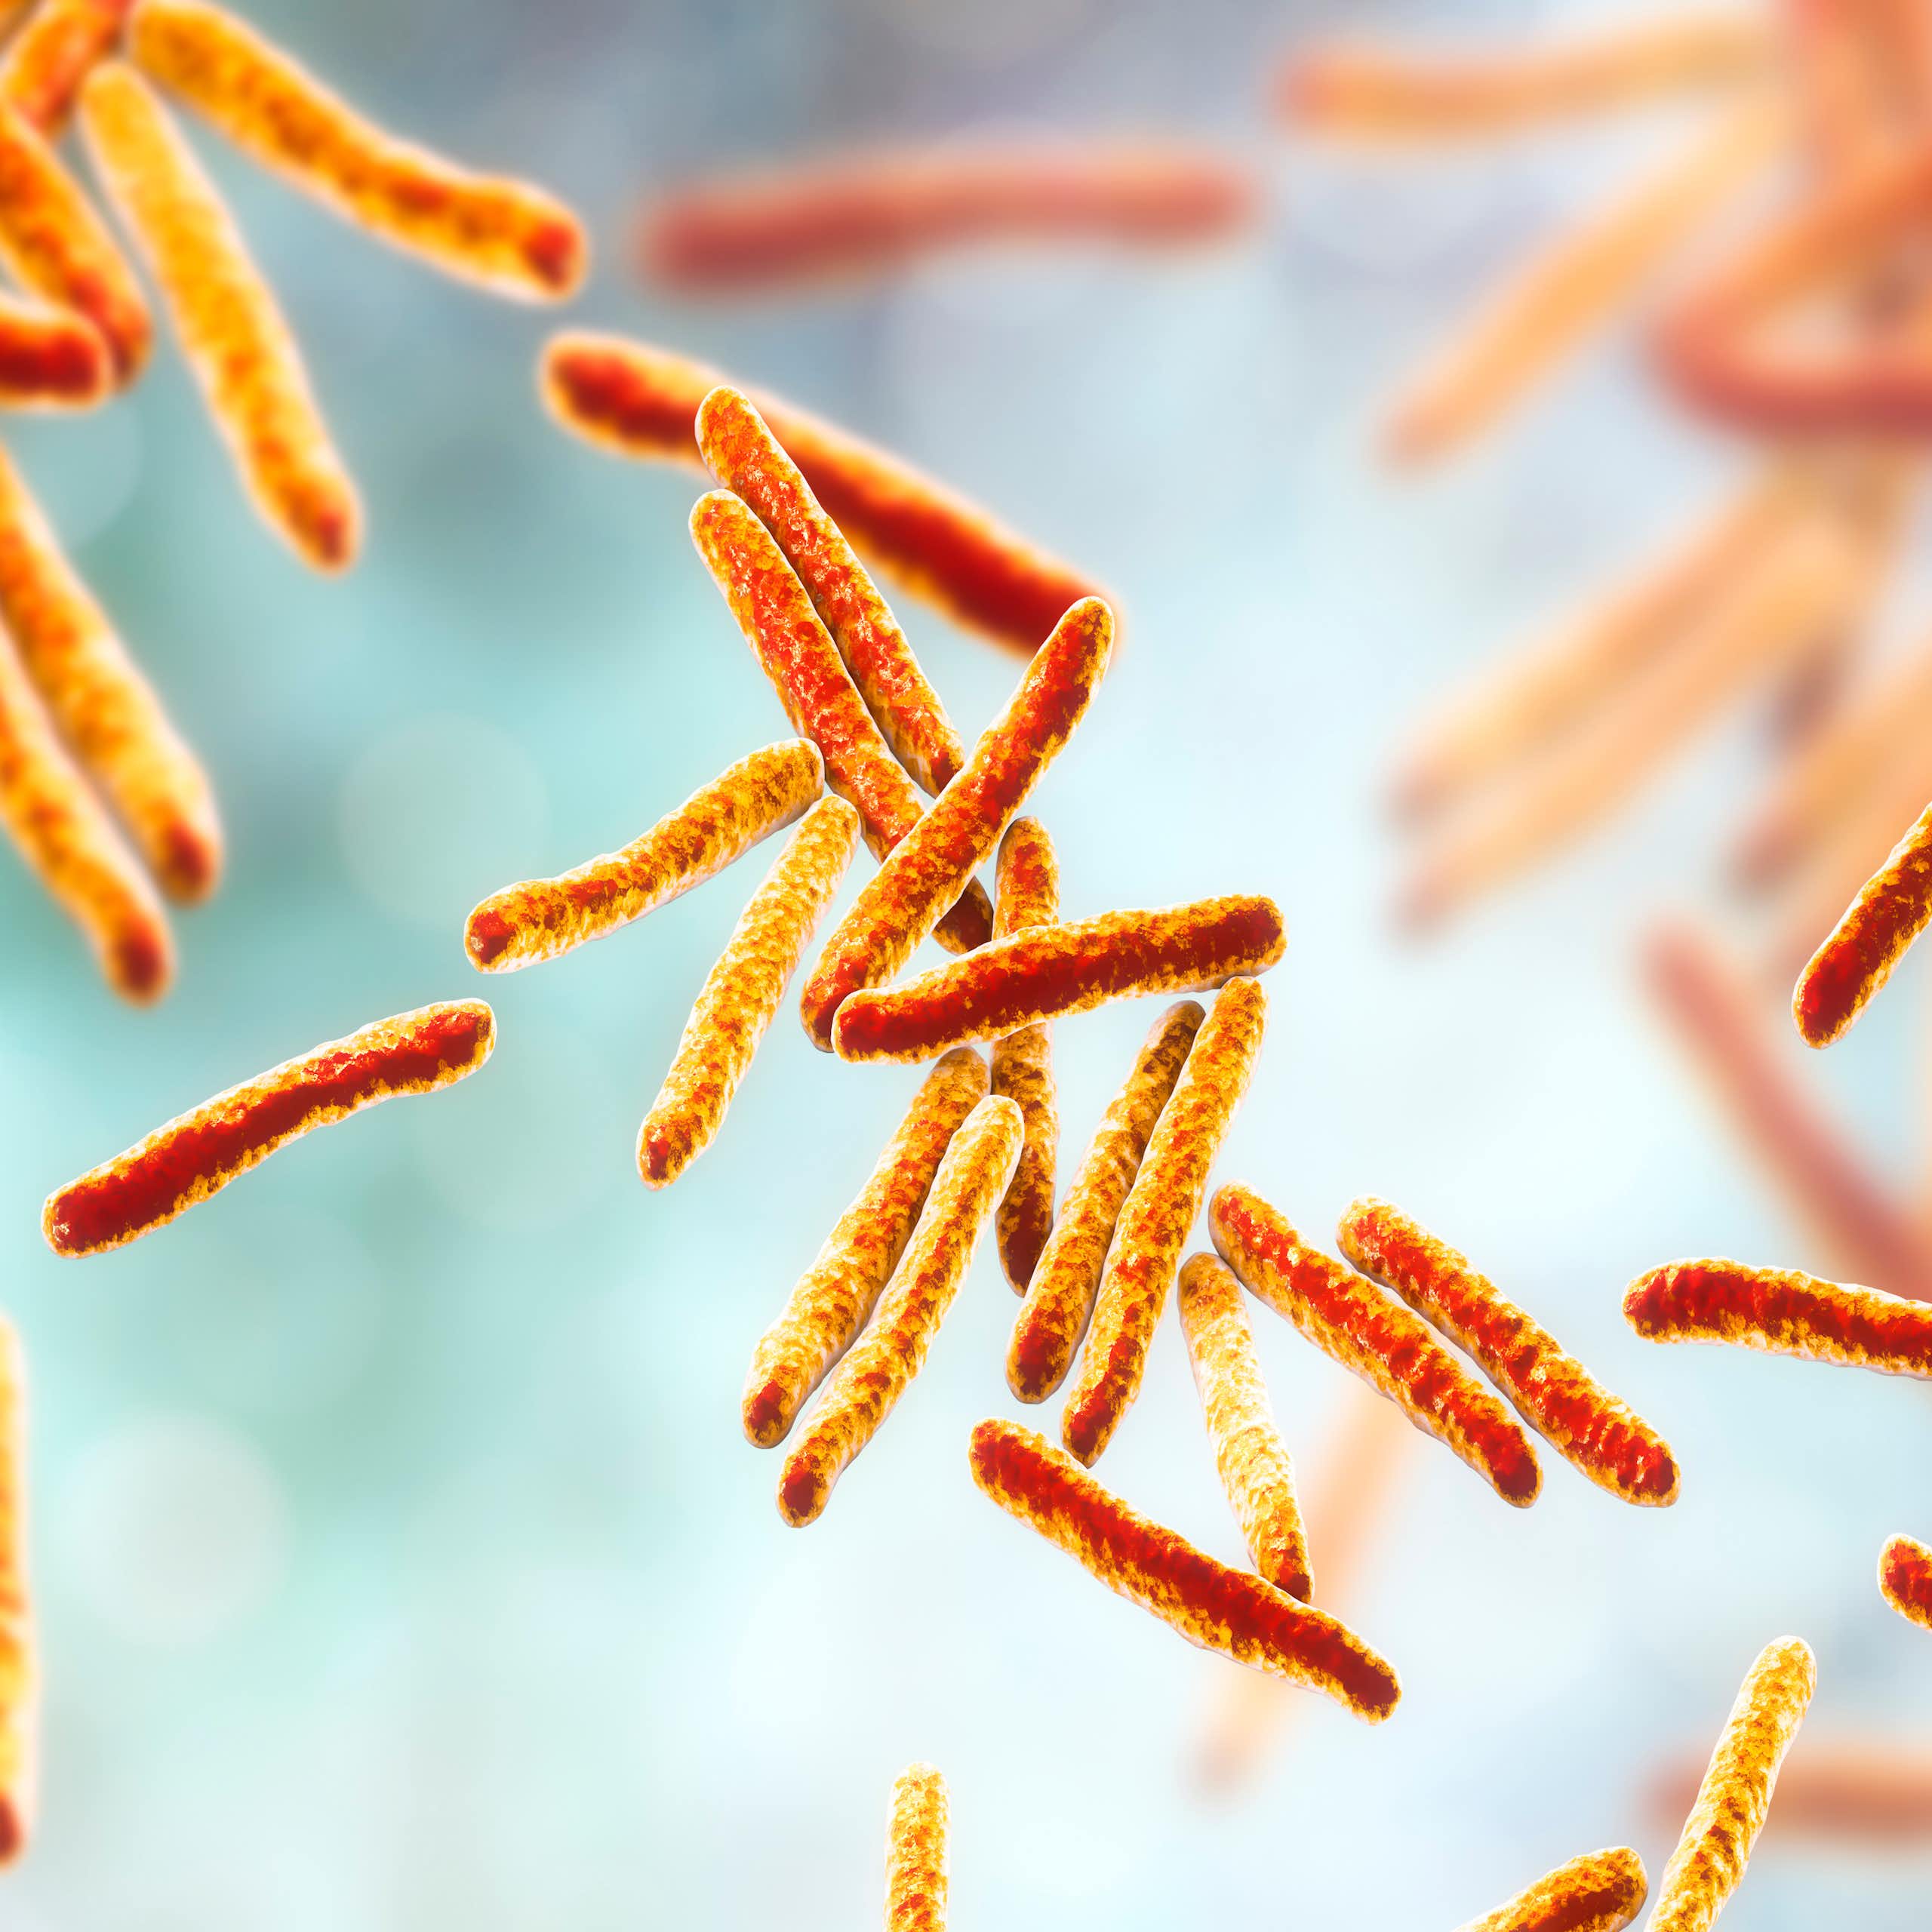 La bacteria de la tuberculosis “roba” la vitamina B12 a los humanos, y saberlo puede mejorar los tratamientos